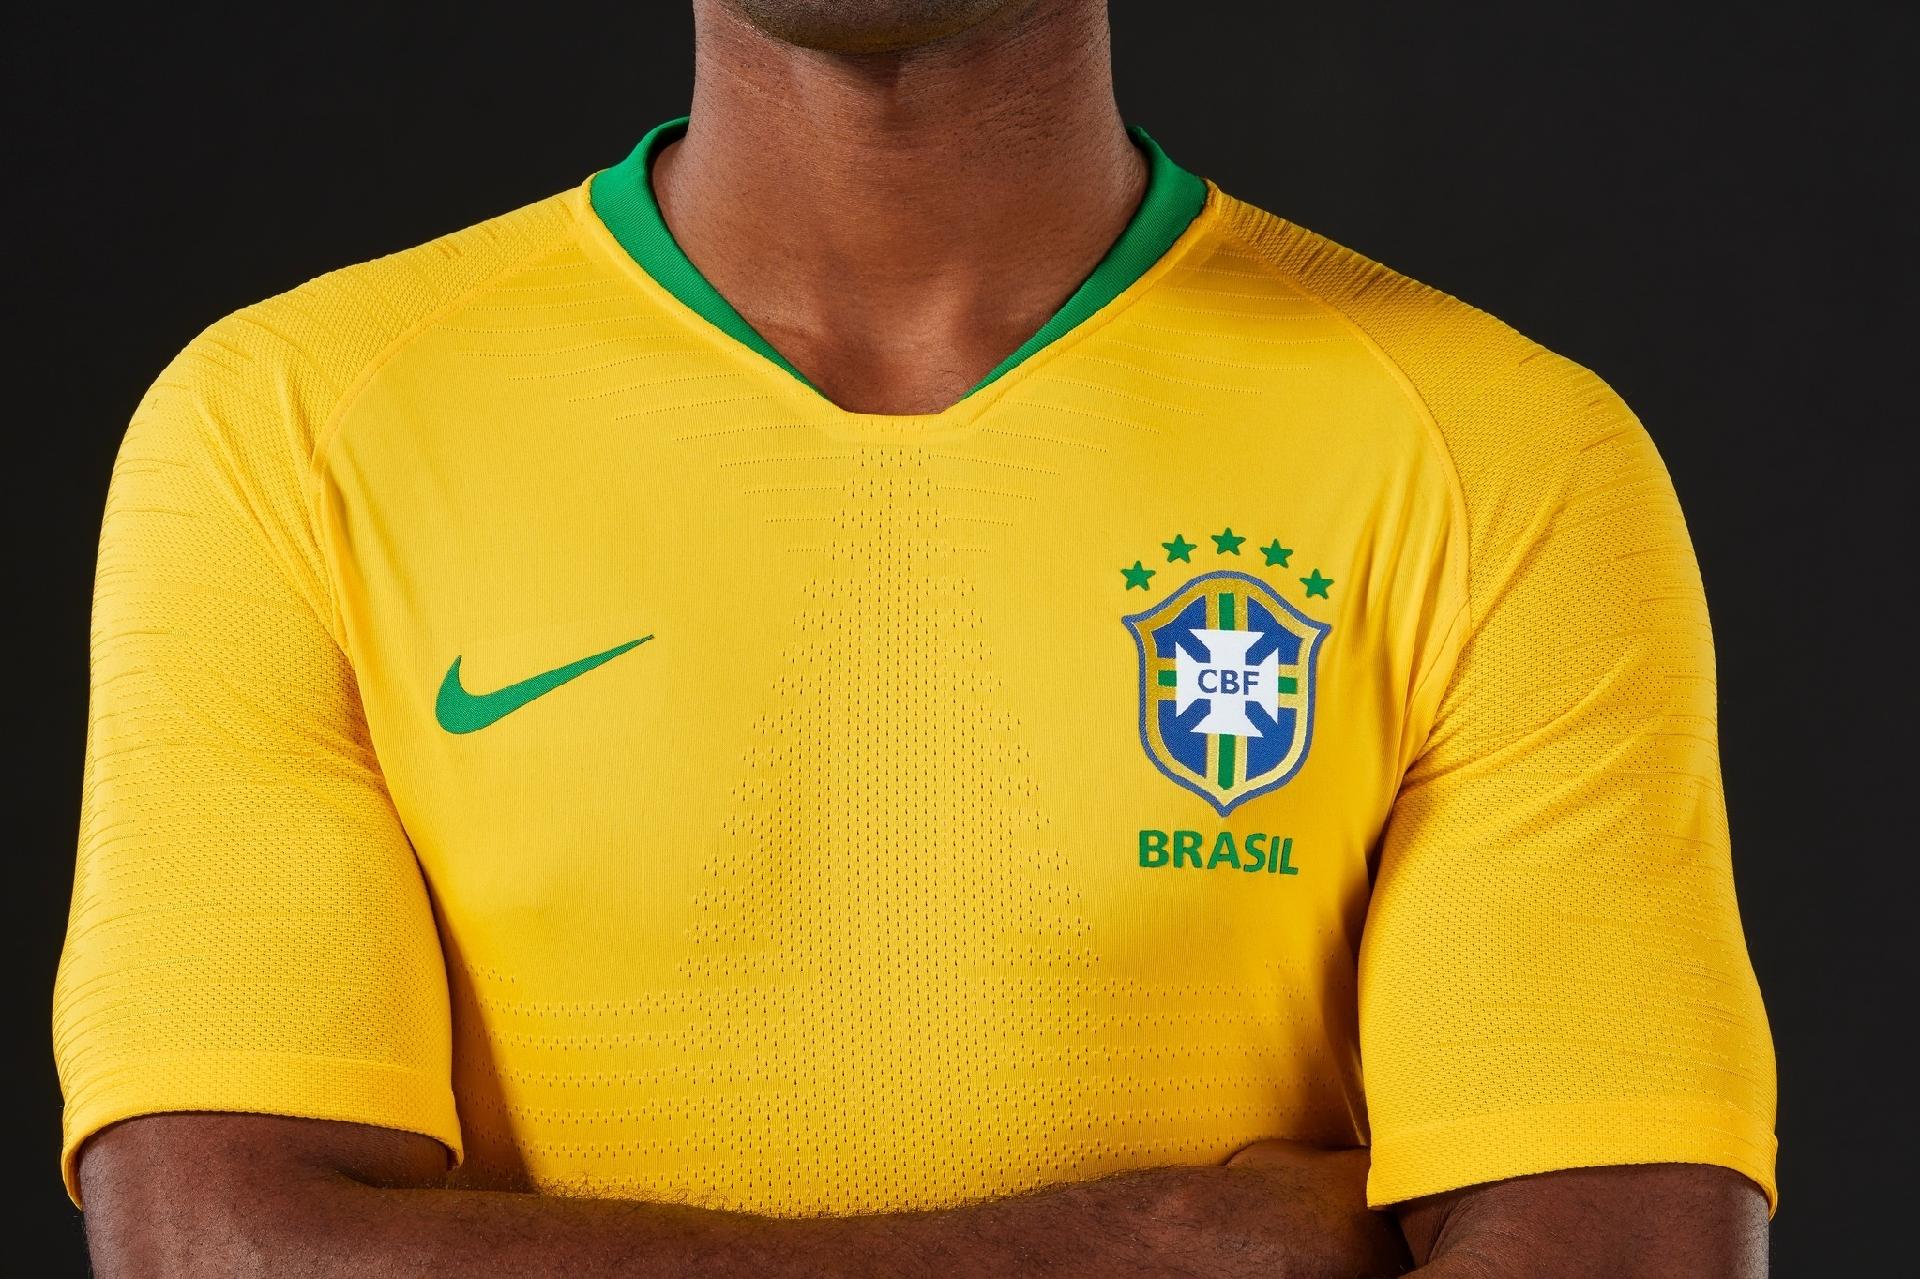 Camisa da seleção brasileira é utilizada em novo golpe do WhatsApp